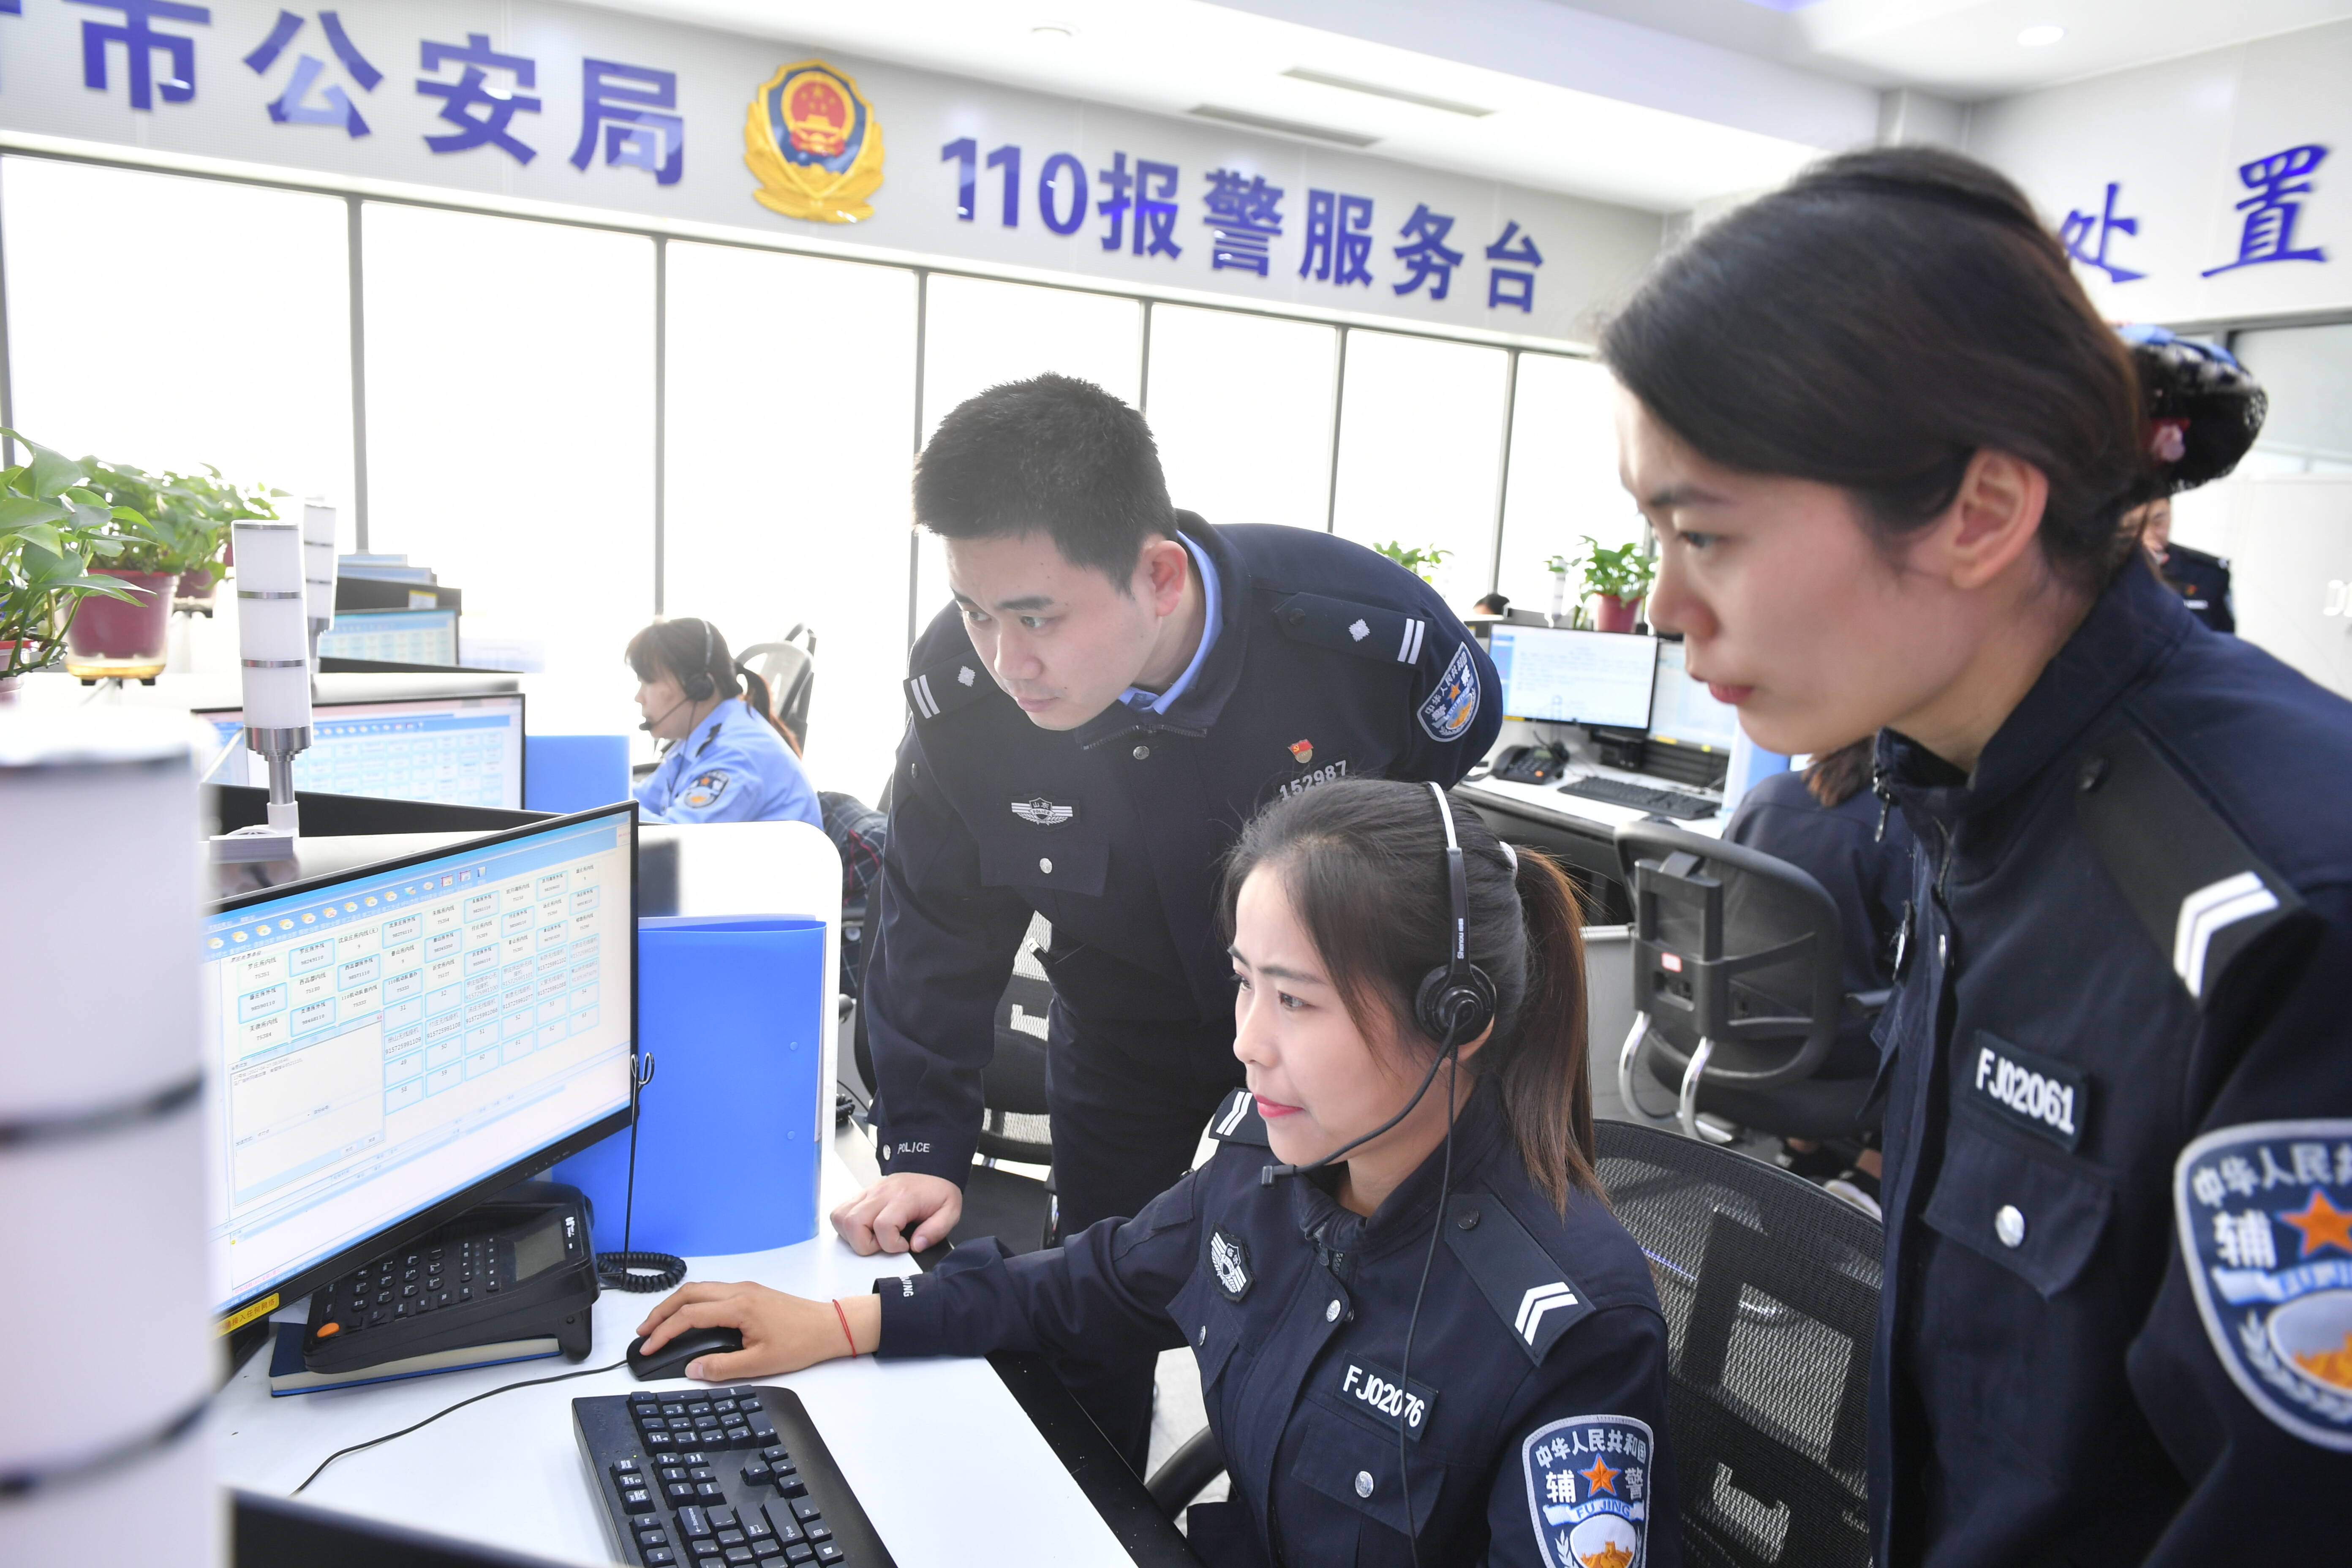 临沂市110报警服务台两名接警员相互接力“保持通话”66分钟 成功救回轻生者